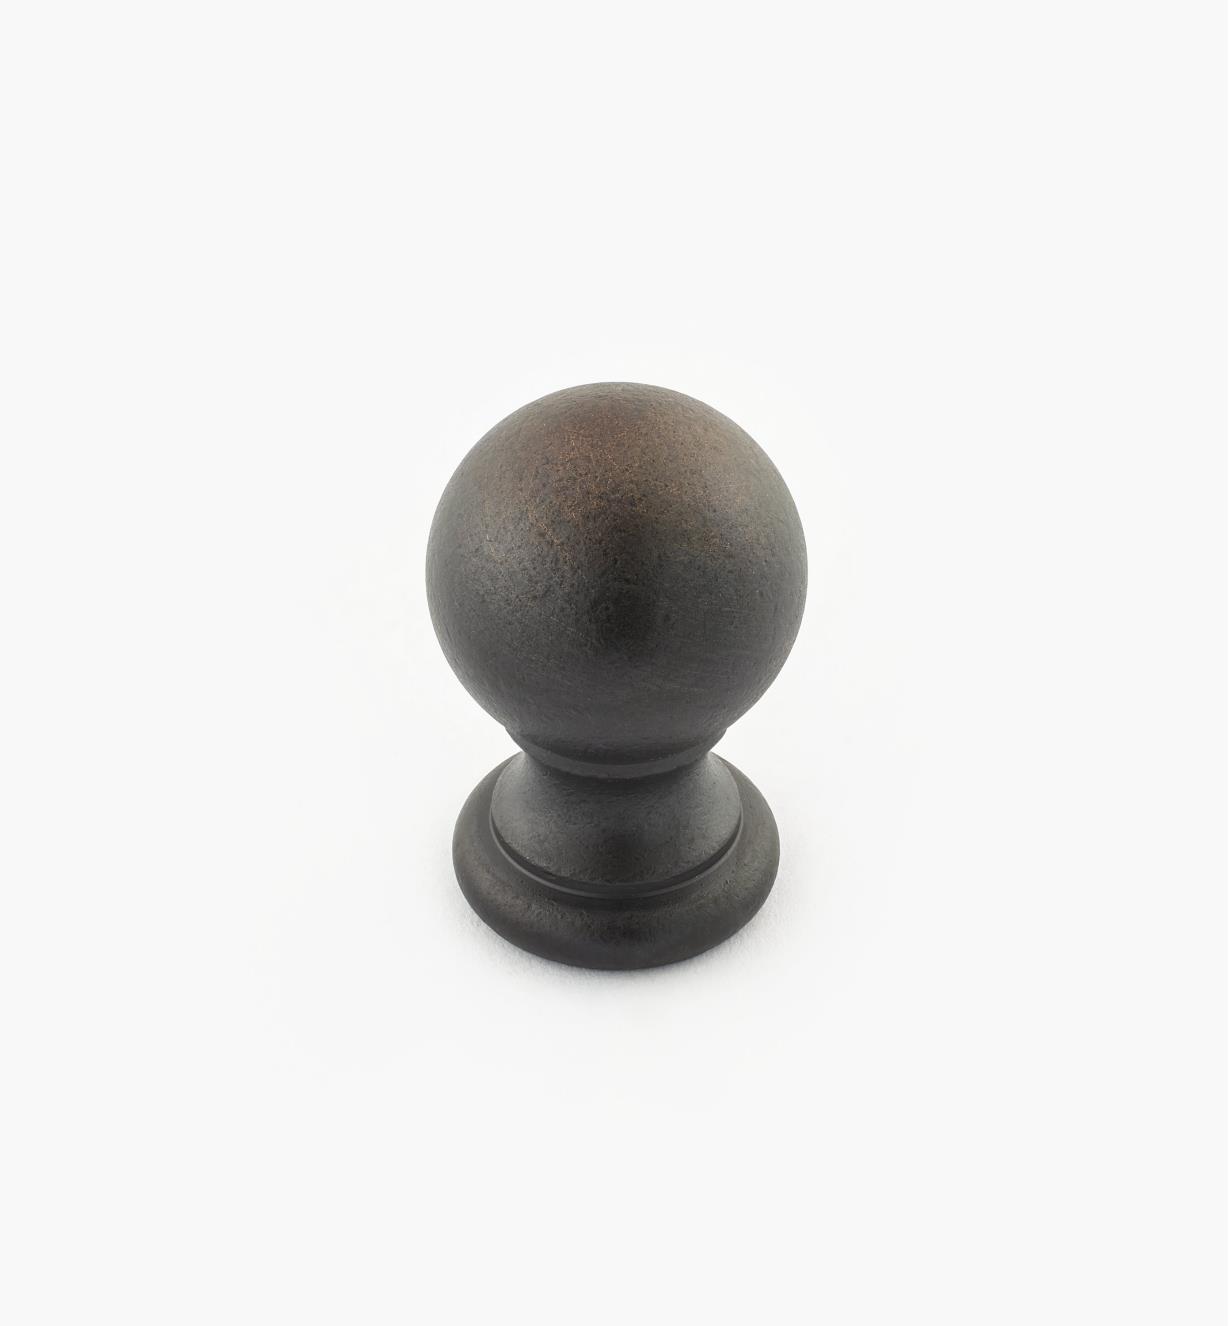 02W3263 - Bouton-boule de 7/8 po x 1 1/4 po, série Vieux Bronze, laiton tourné